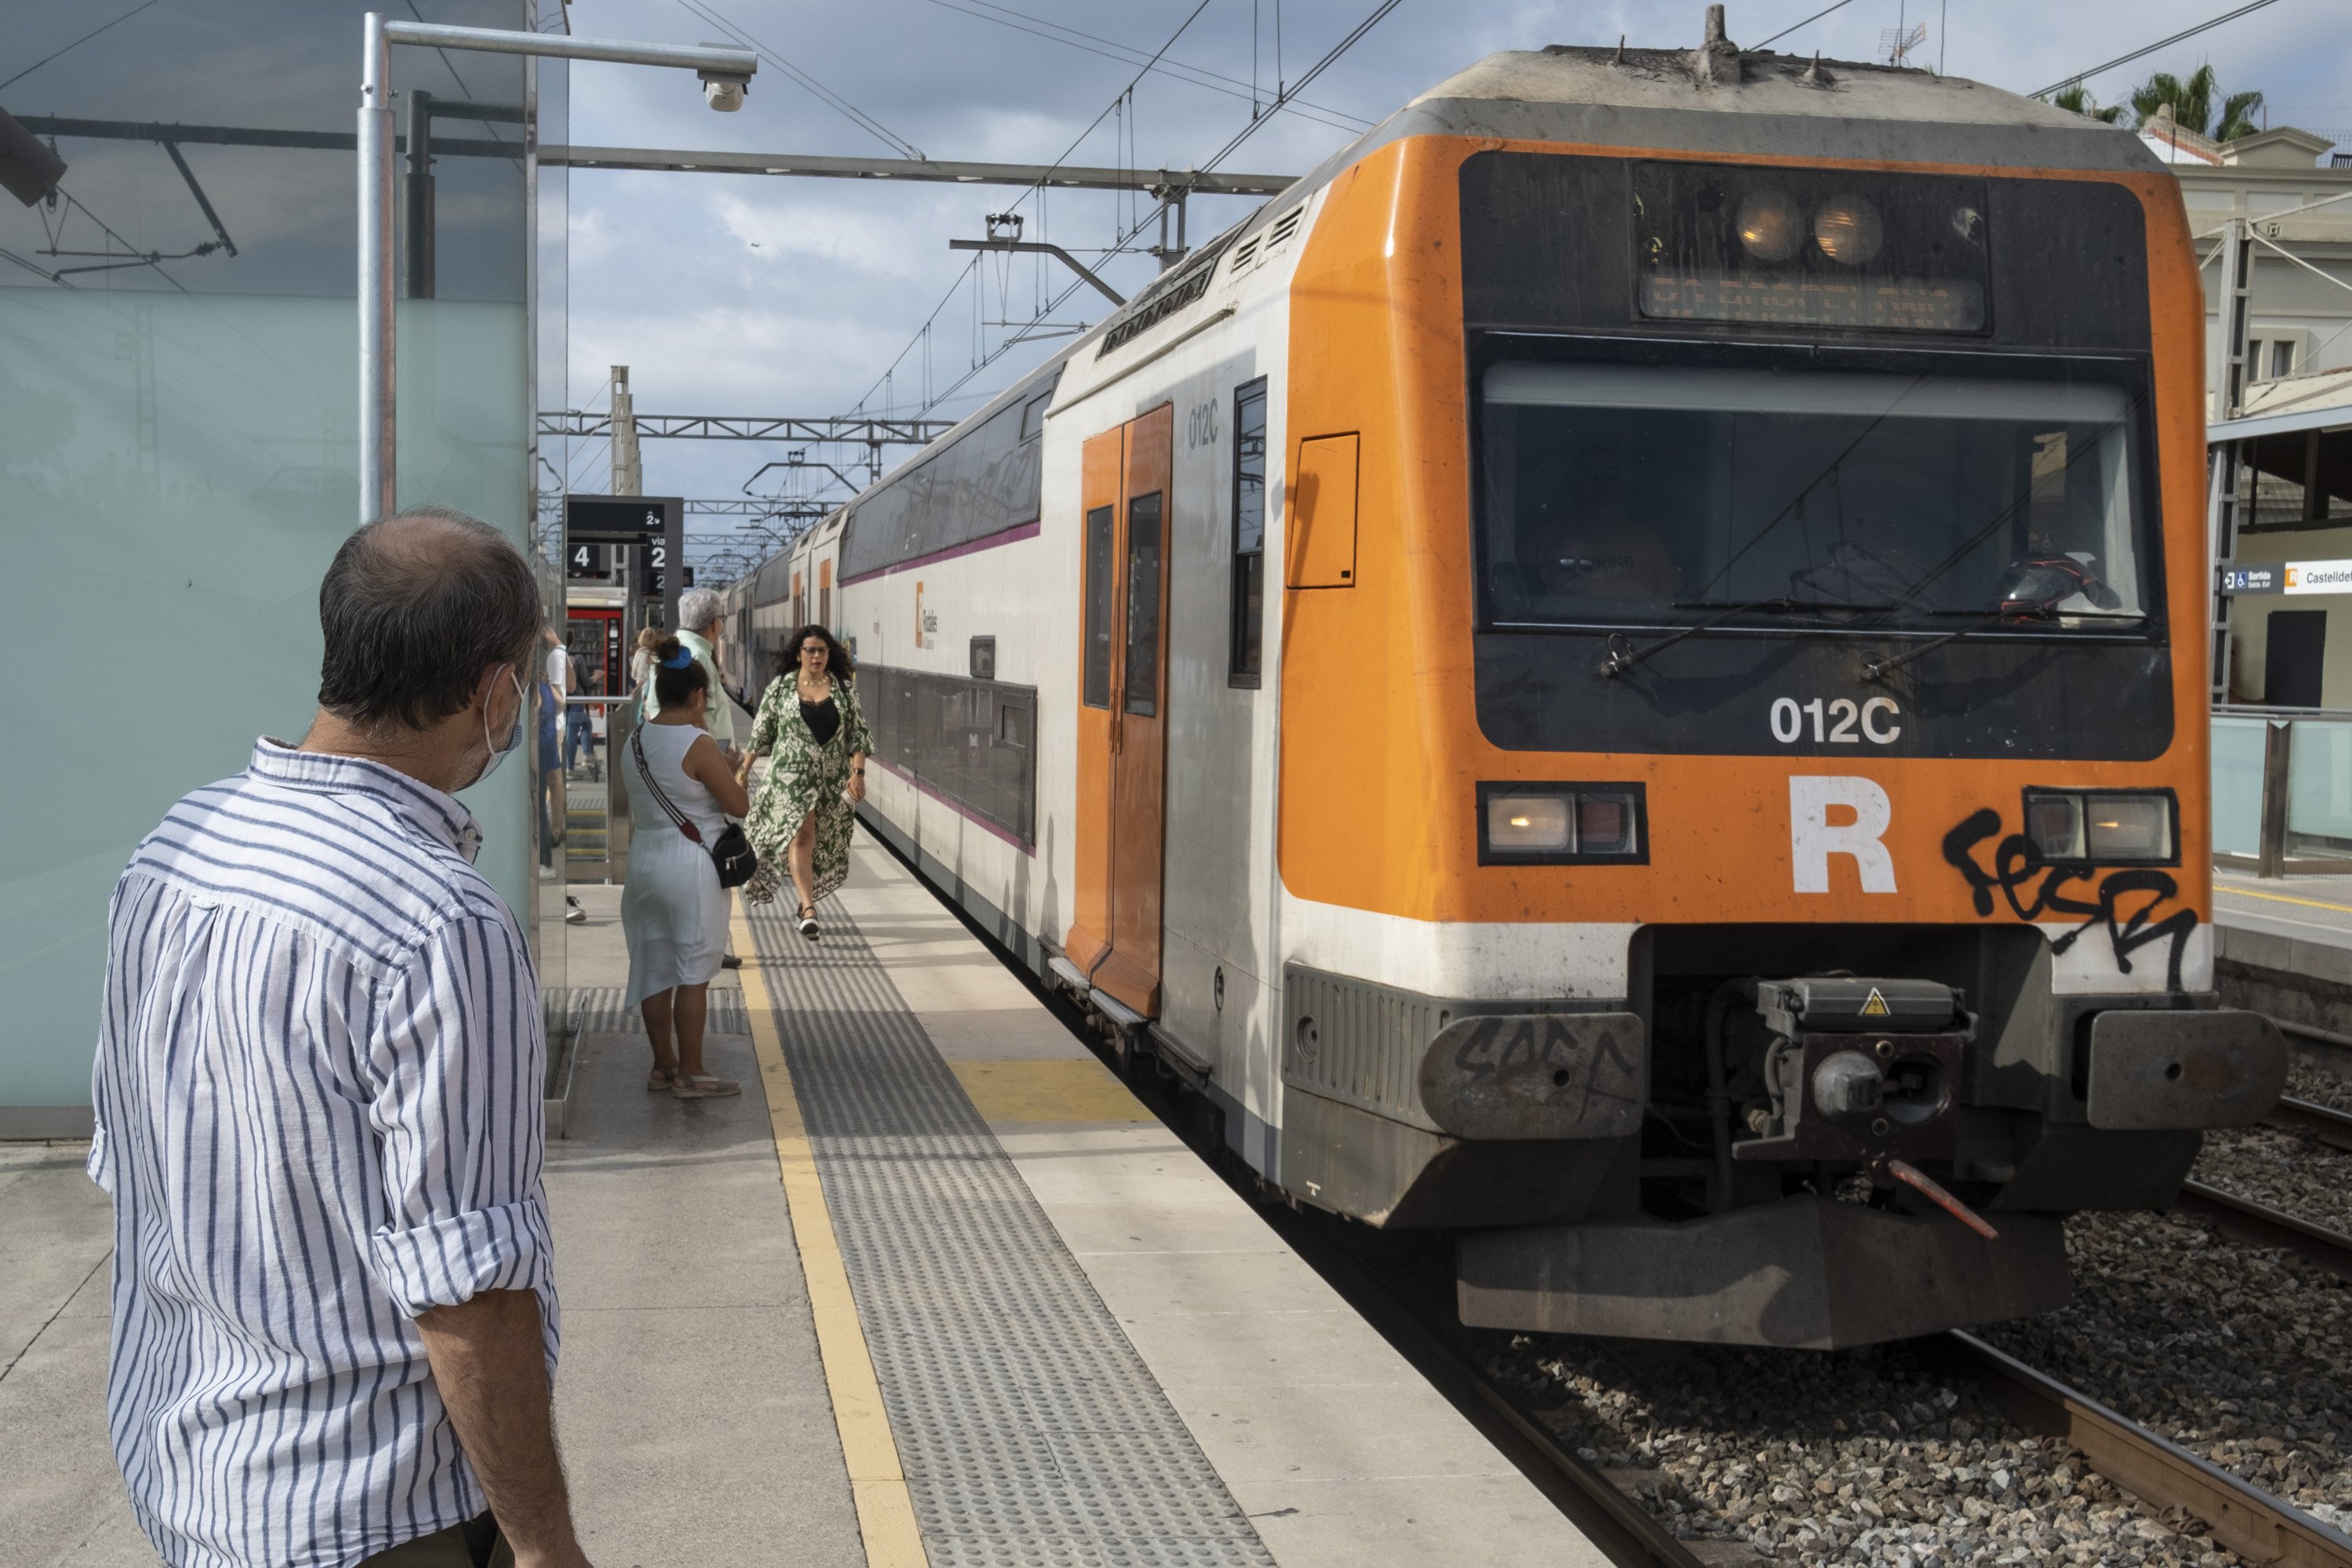 Recurs Renfe Rodalies tren passatger castelldefels estació / Foto: Carlos Baglietto